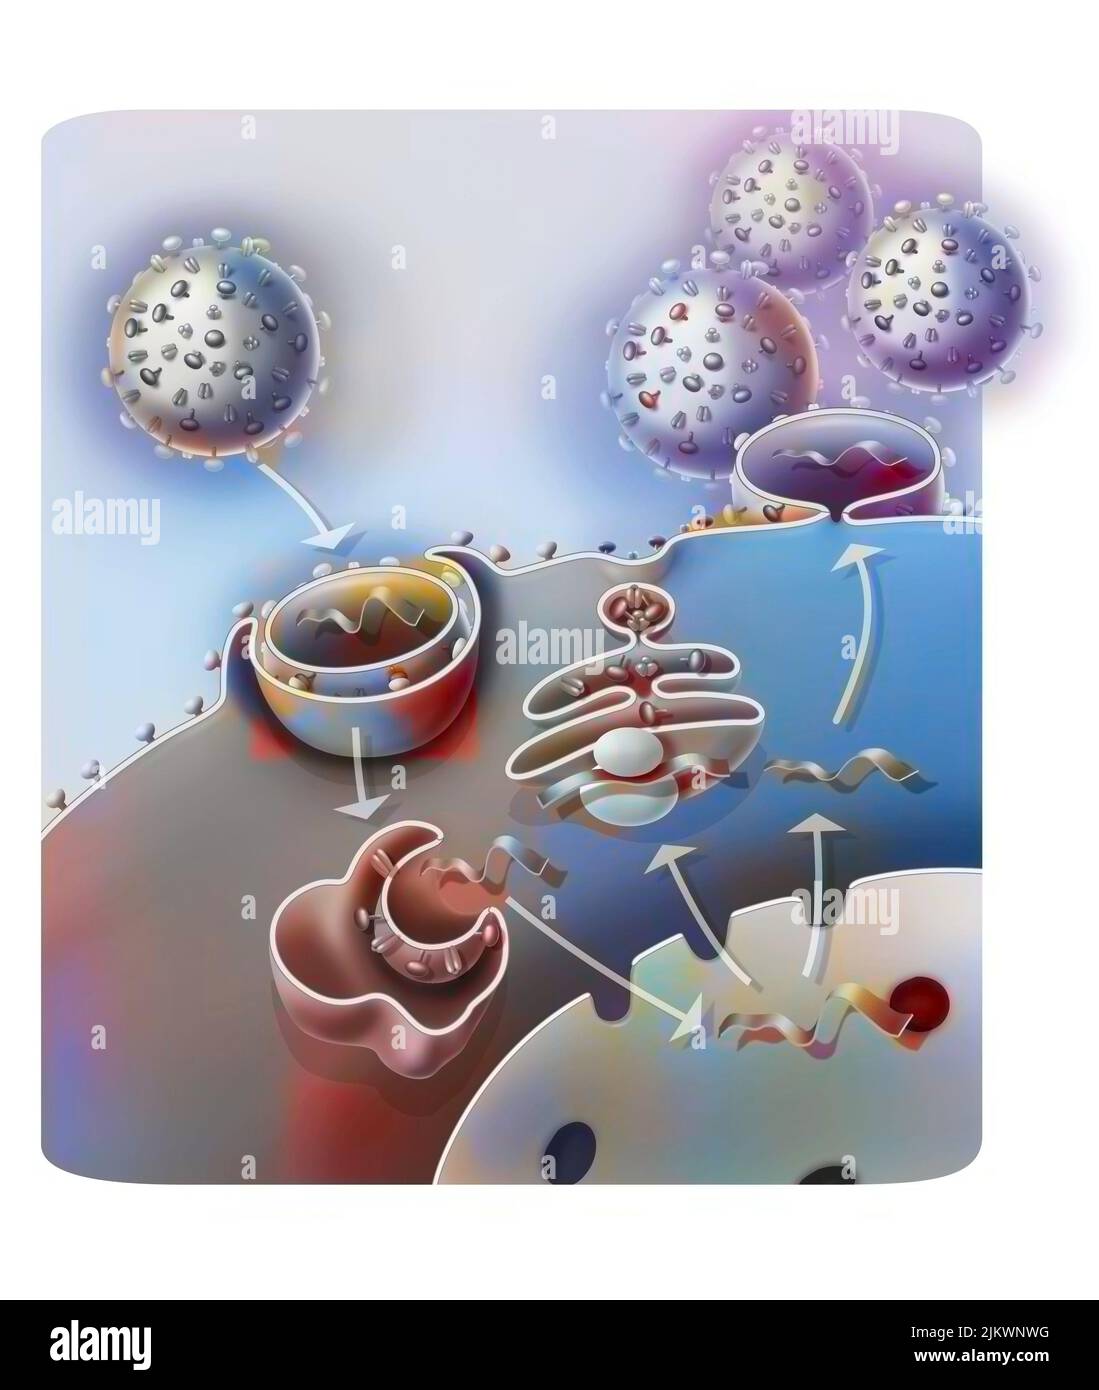 Penetrazione e replicazione del virus H1N1 attraverso una cellula ospite. Foto Stock